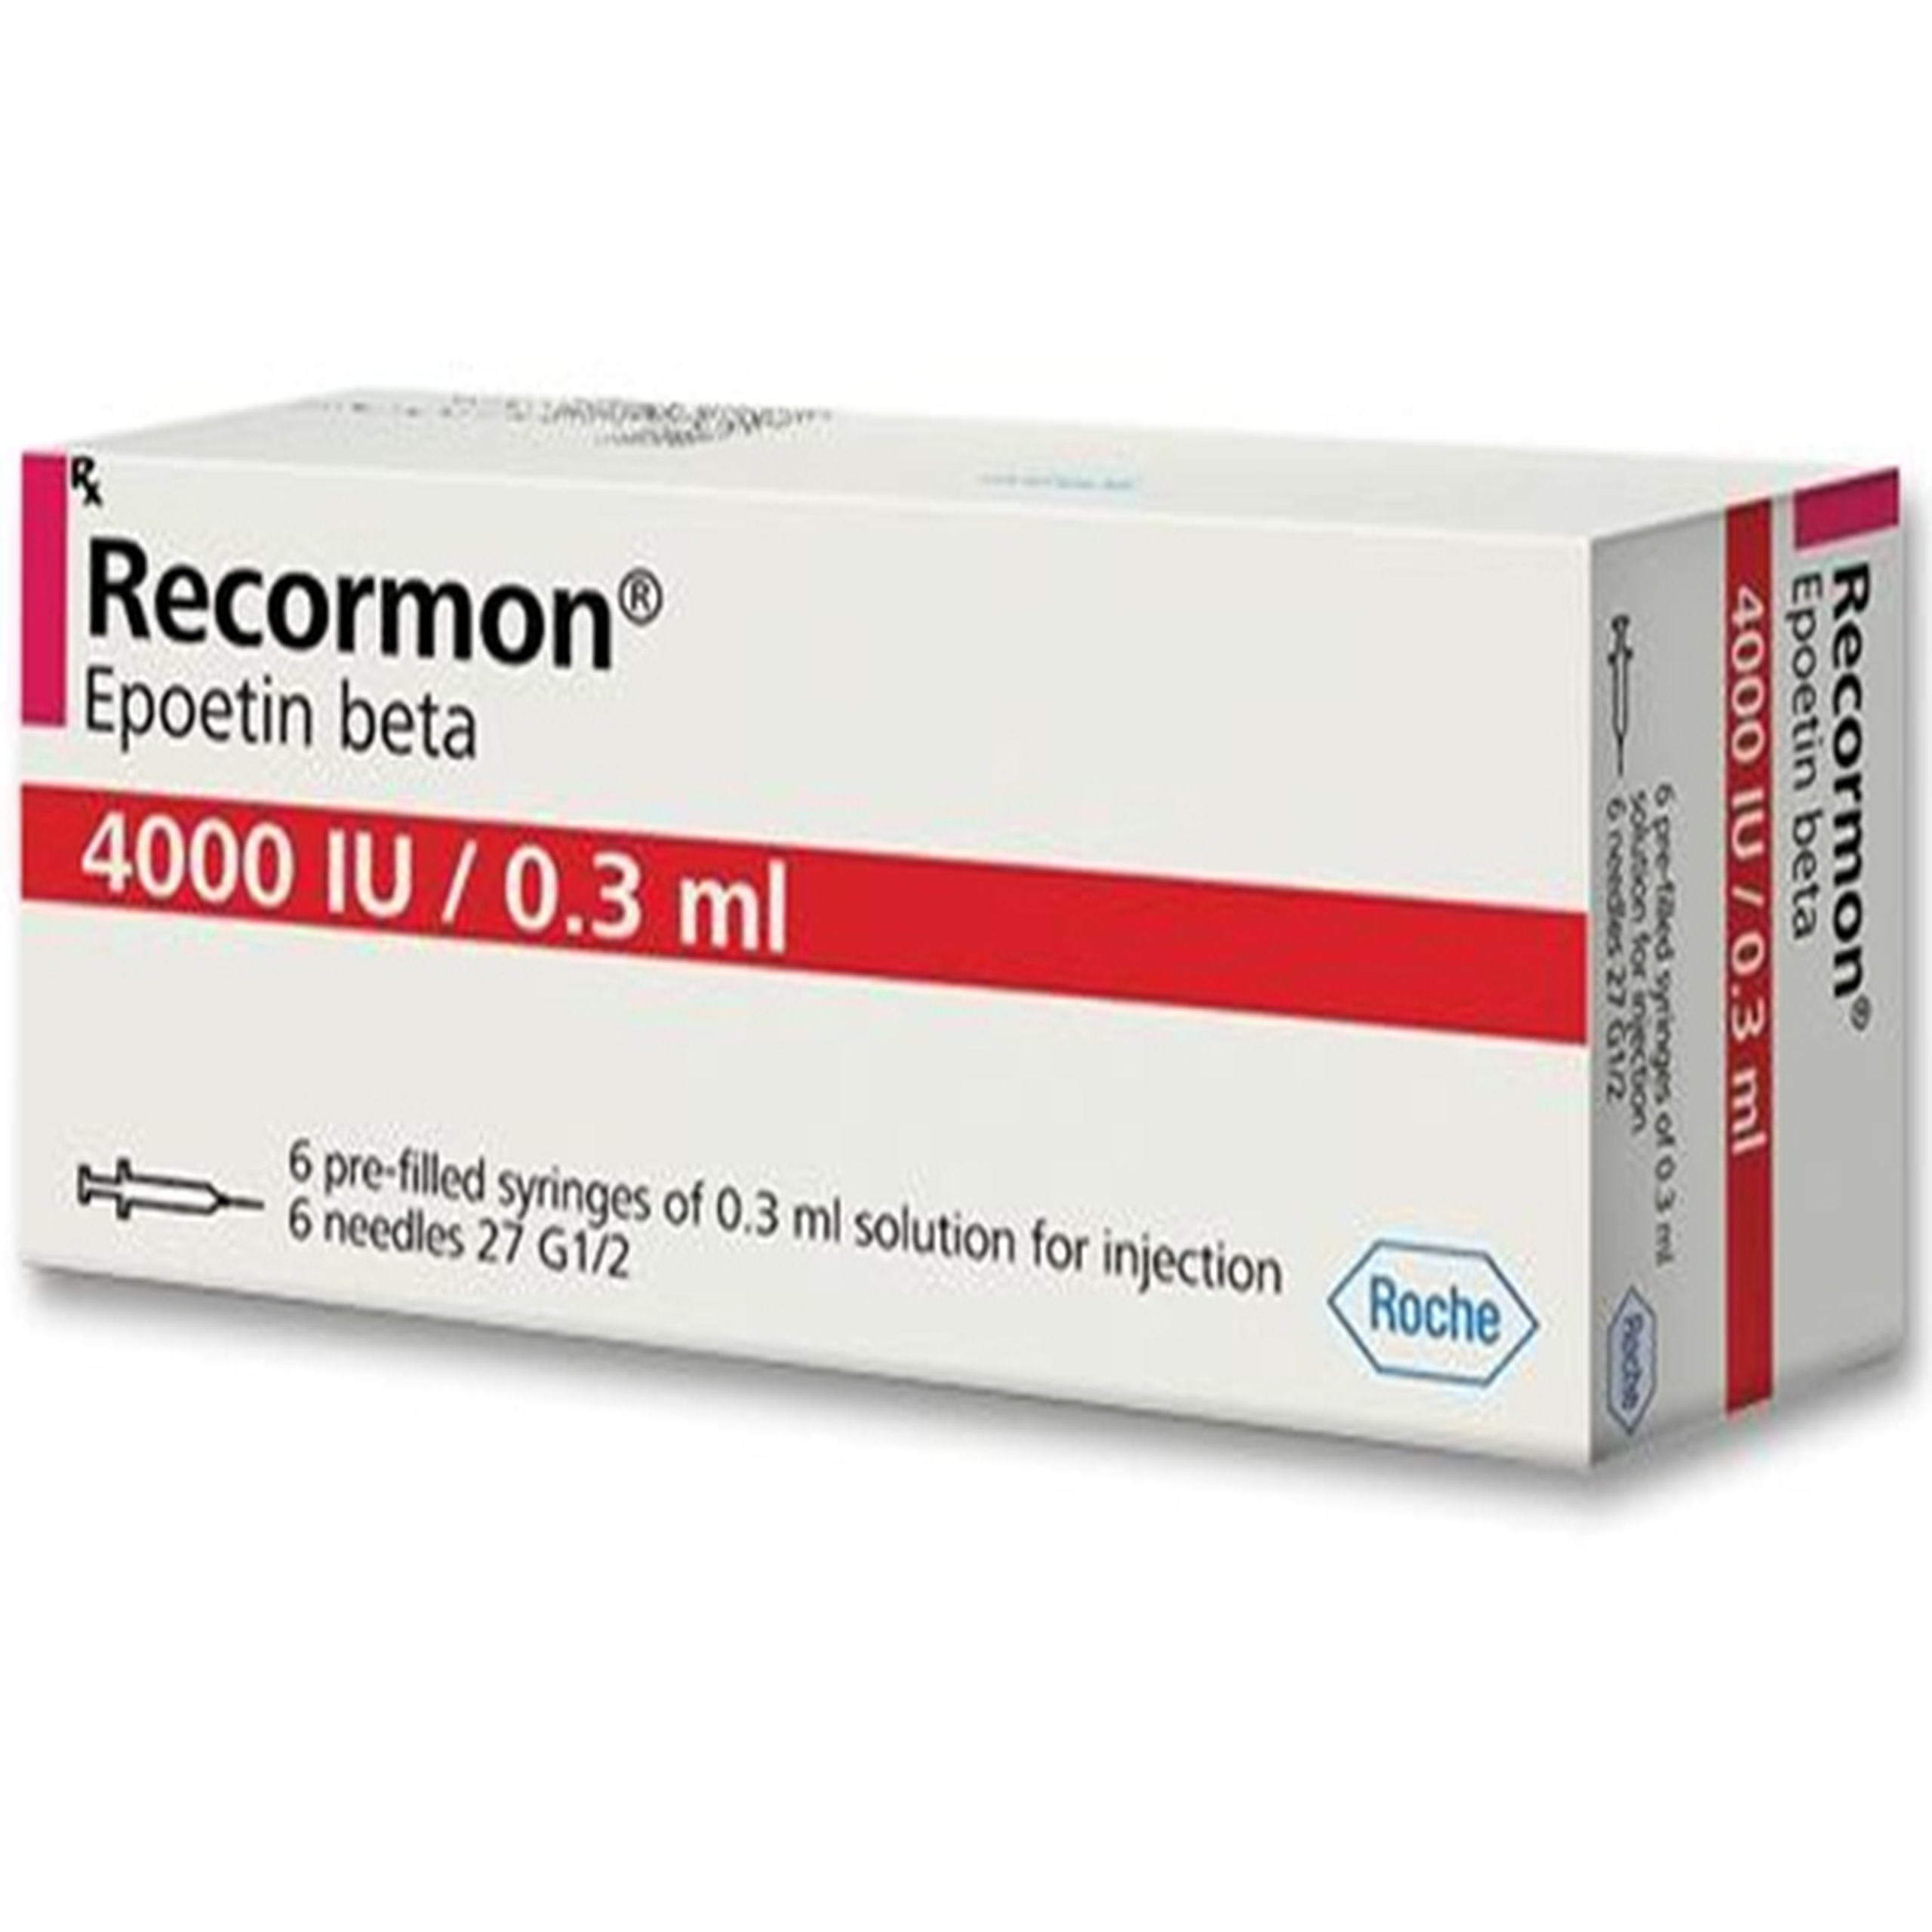 Thuốc tiêm Recormon 4000IU/0.3ml F.Hoffmann-La Roche điều trị bệnh thiếu máu (6 ống x 0.3ml)